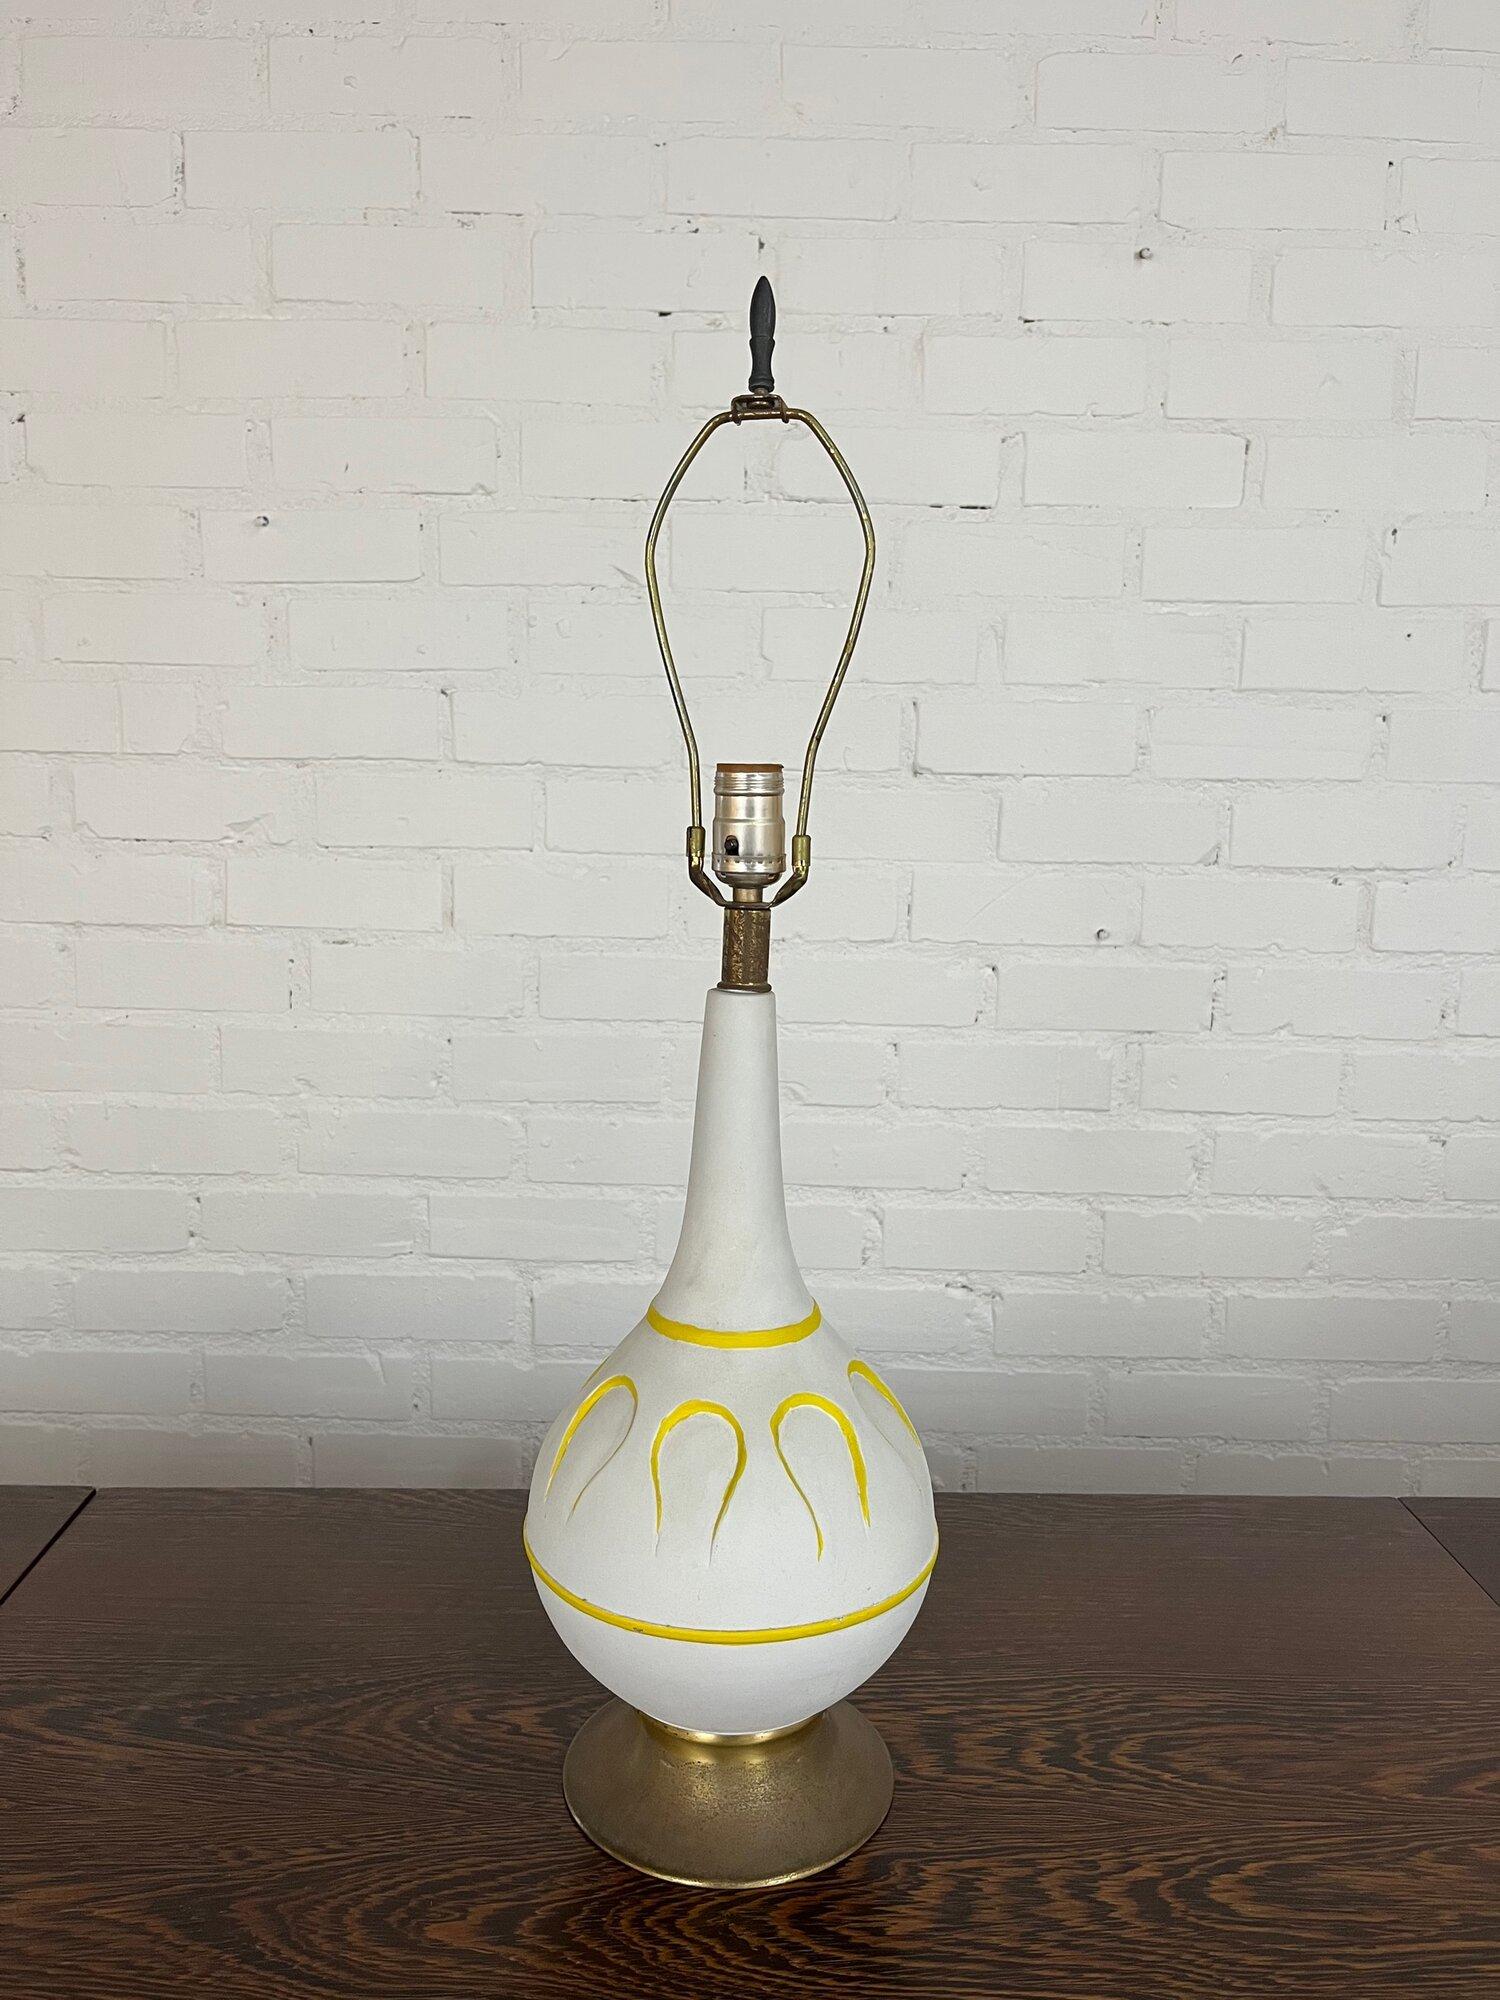 W7.5 D7.5 H29

Vintage-Tischlampe mit mattweißem Finish, akzentuiert durch gelbe Details, die dem Muster auf der Tischlampe folgen. Der Messingfuß und die Details haben Patina. Die Lampe schaltet sich im Nacken ein und aus. Lampe ist voll